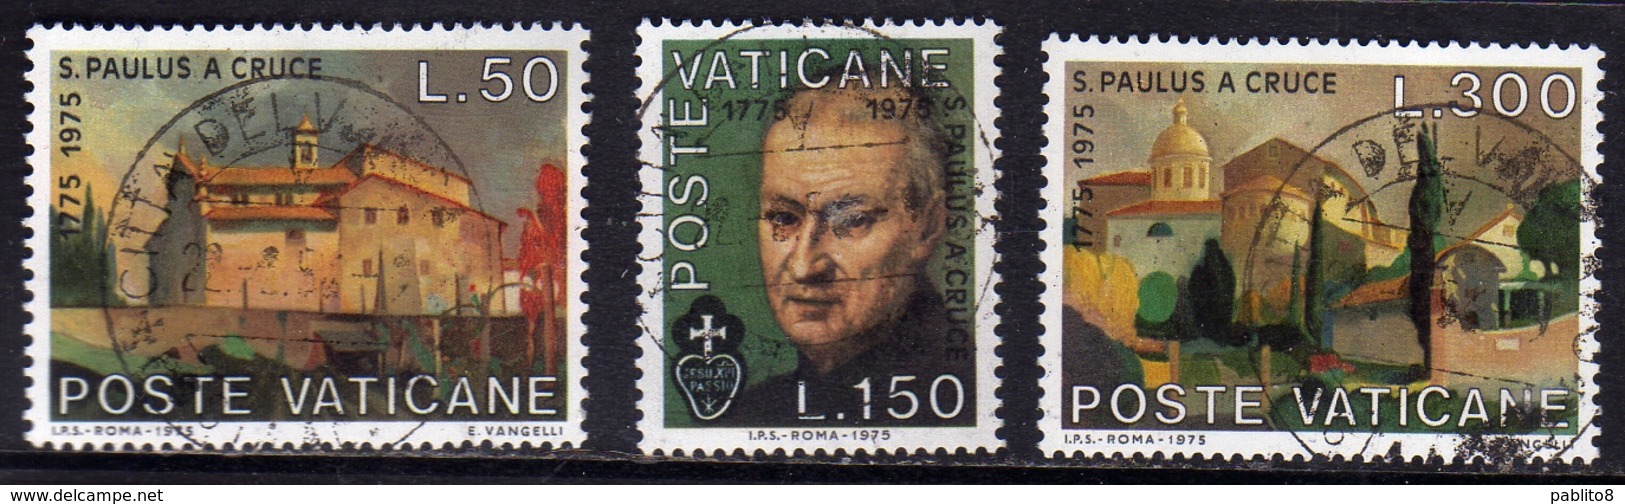 CITTÀ DEL VATICANO VATICAN VATIKAN 1975 S.PAOLO DELLA CROCE SERIE COMPLETA COMPLETE SET USATA USED OBLITERE' - Used Stamps